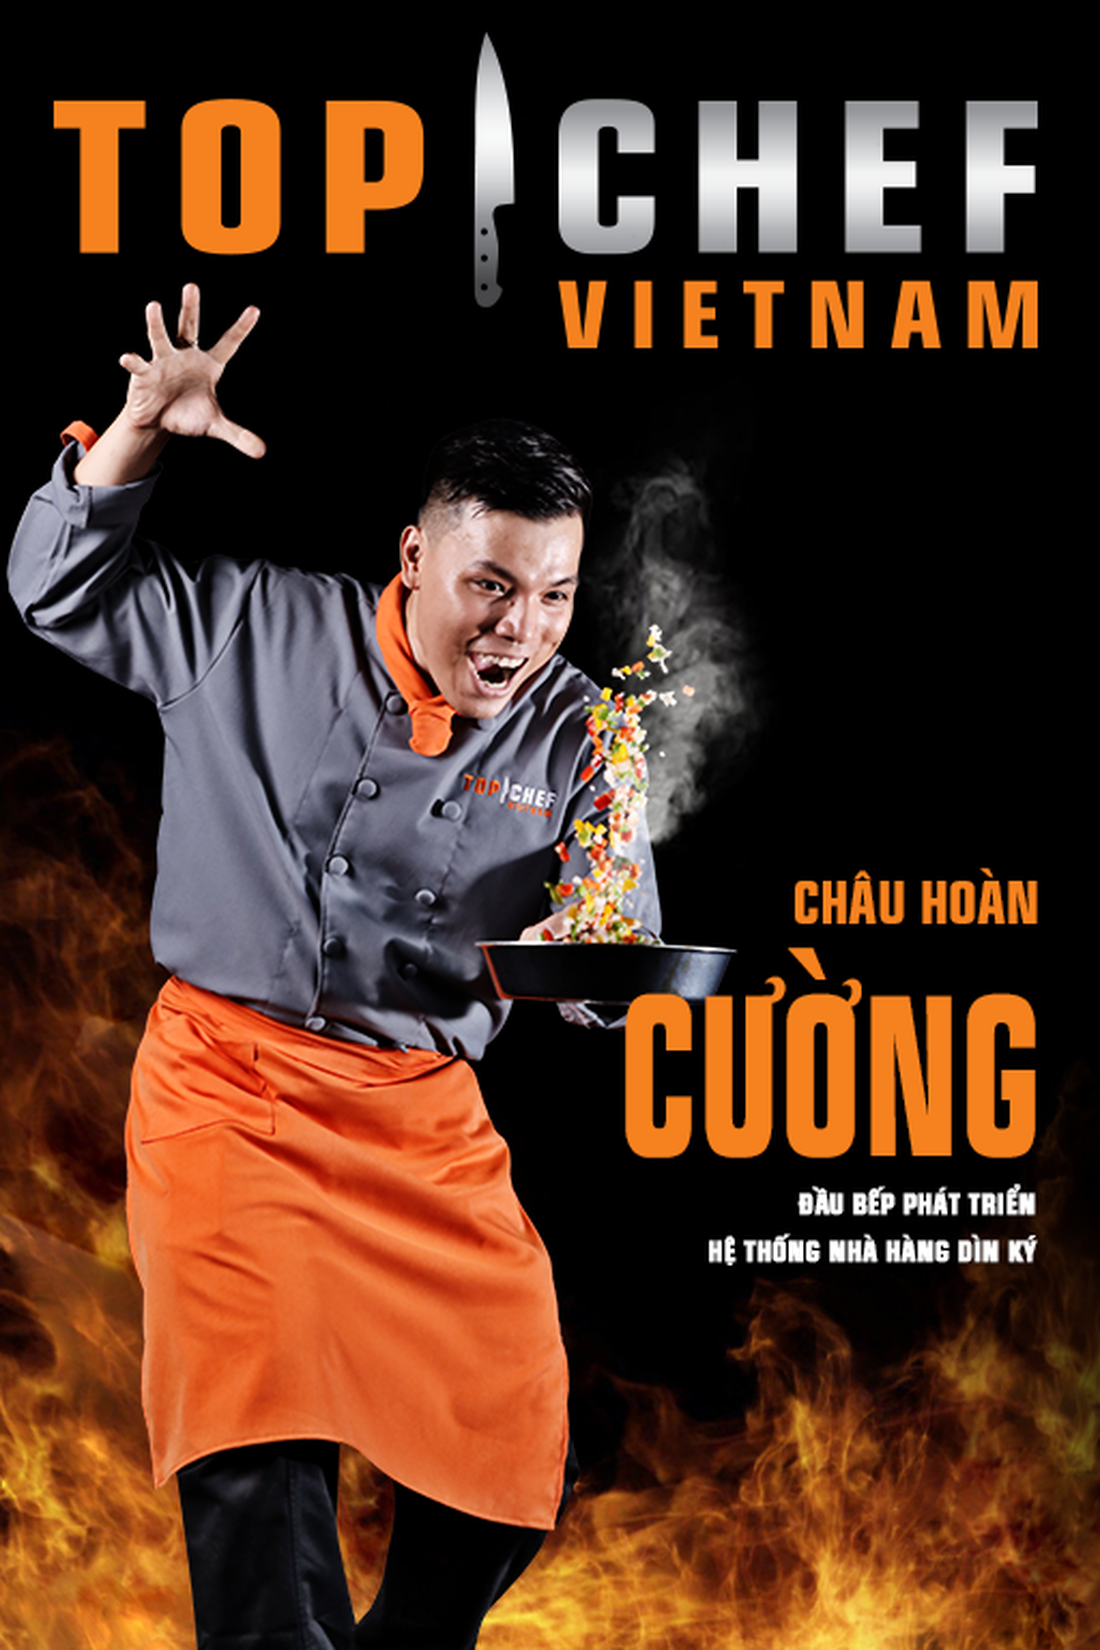 Lộ diện top 14 Đầu bếp thượng đỉnh - Top chef Vietnam 2019 - Ảnh 4.